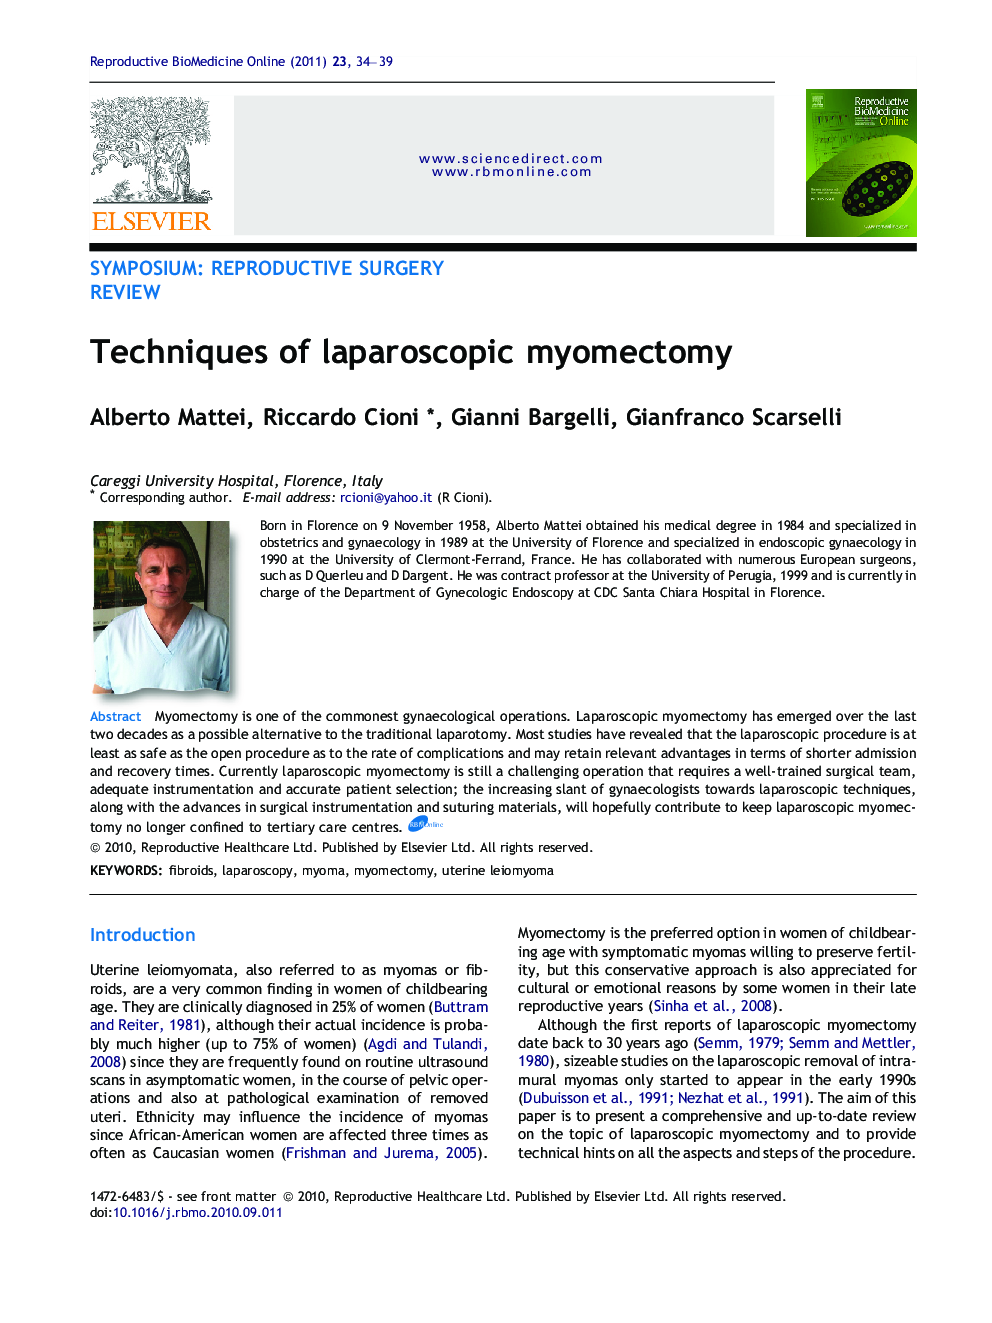 Techniques of laparoscopic myomectomy 